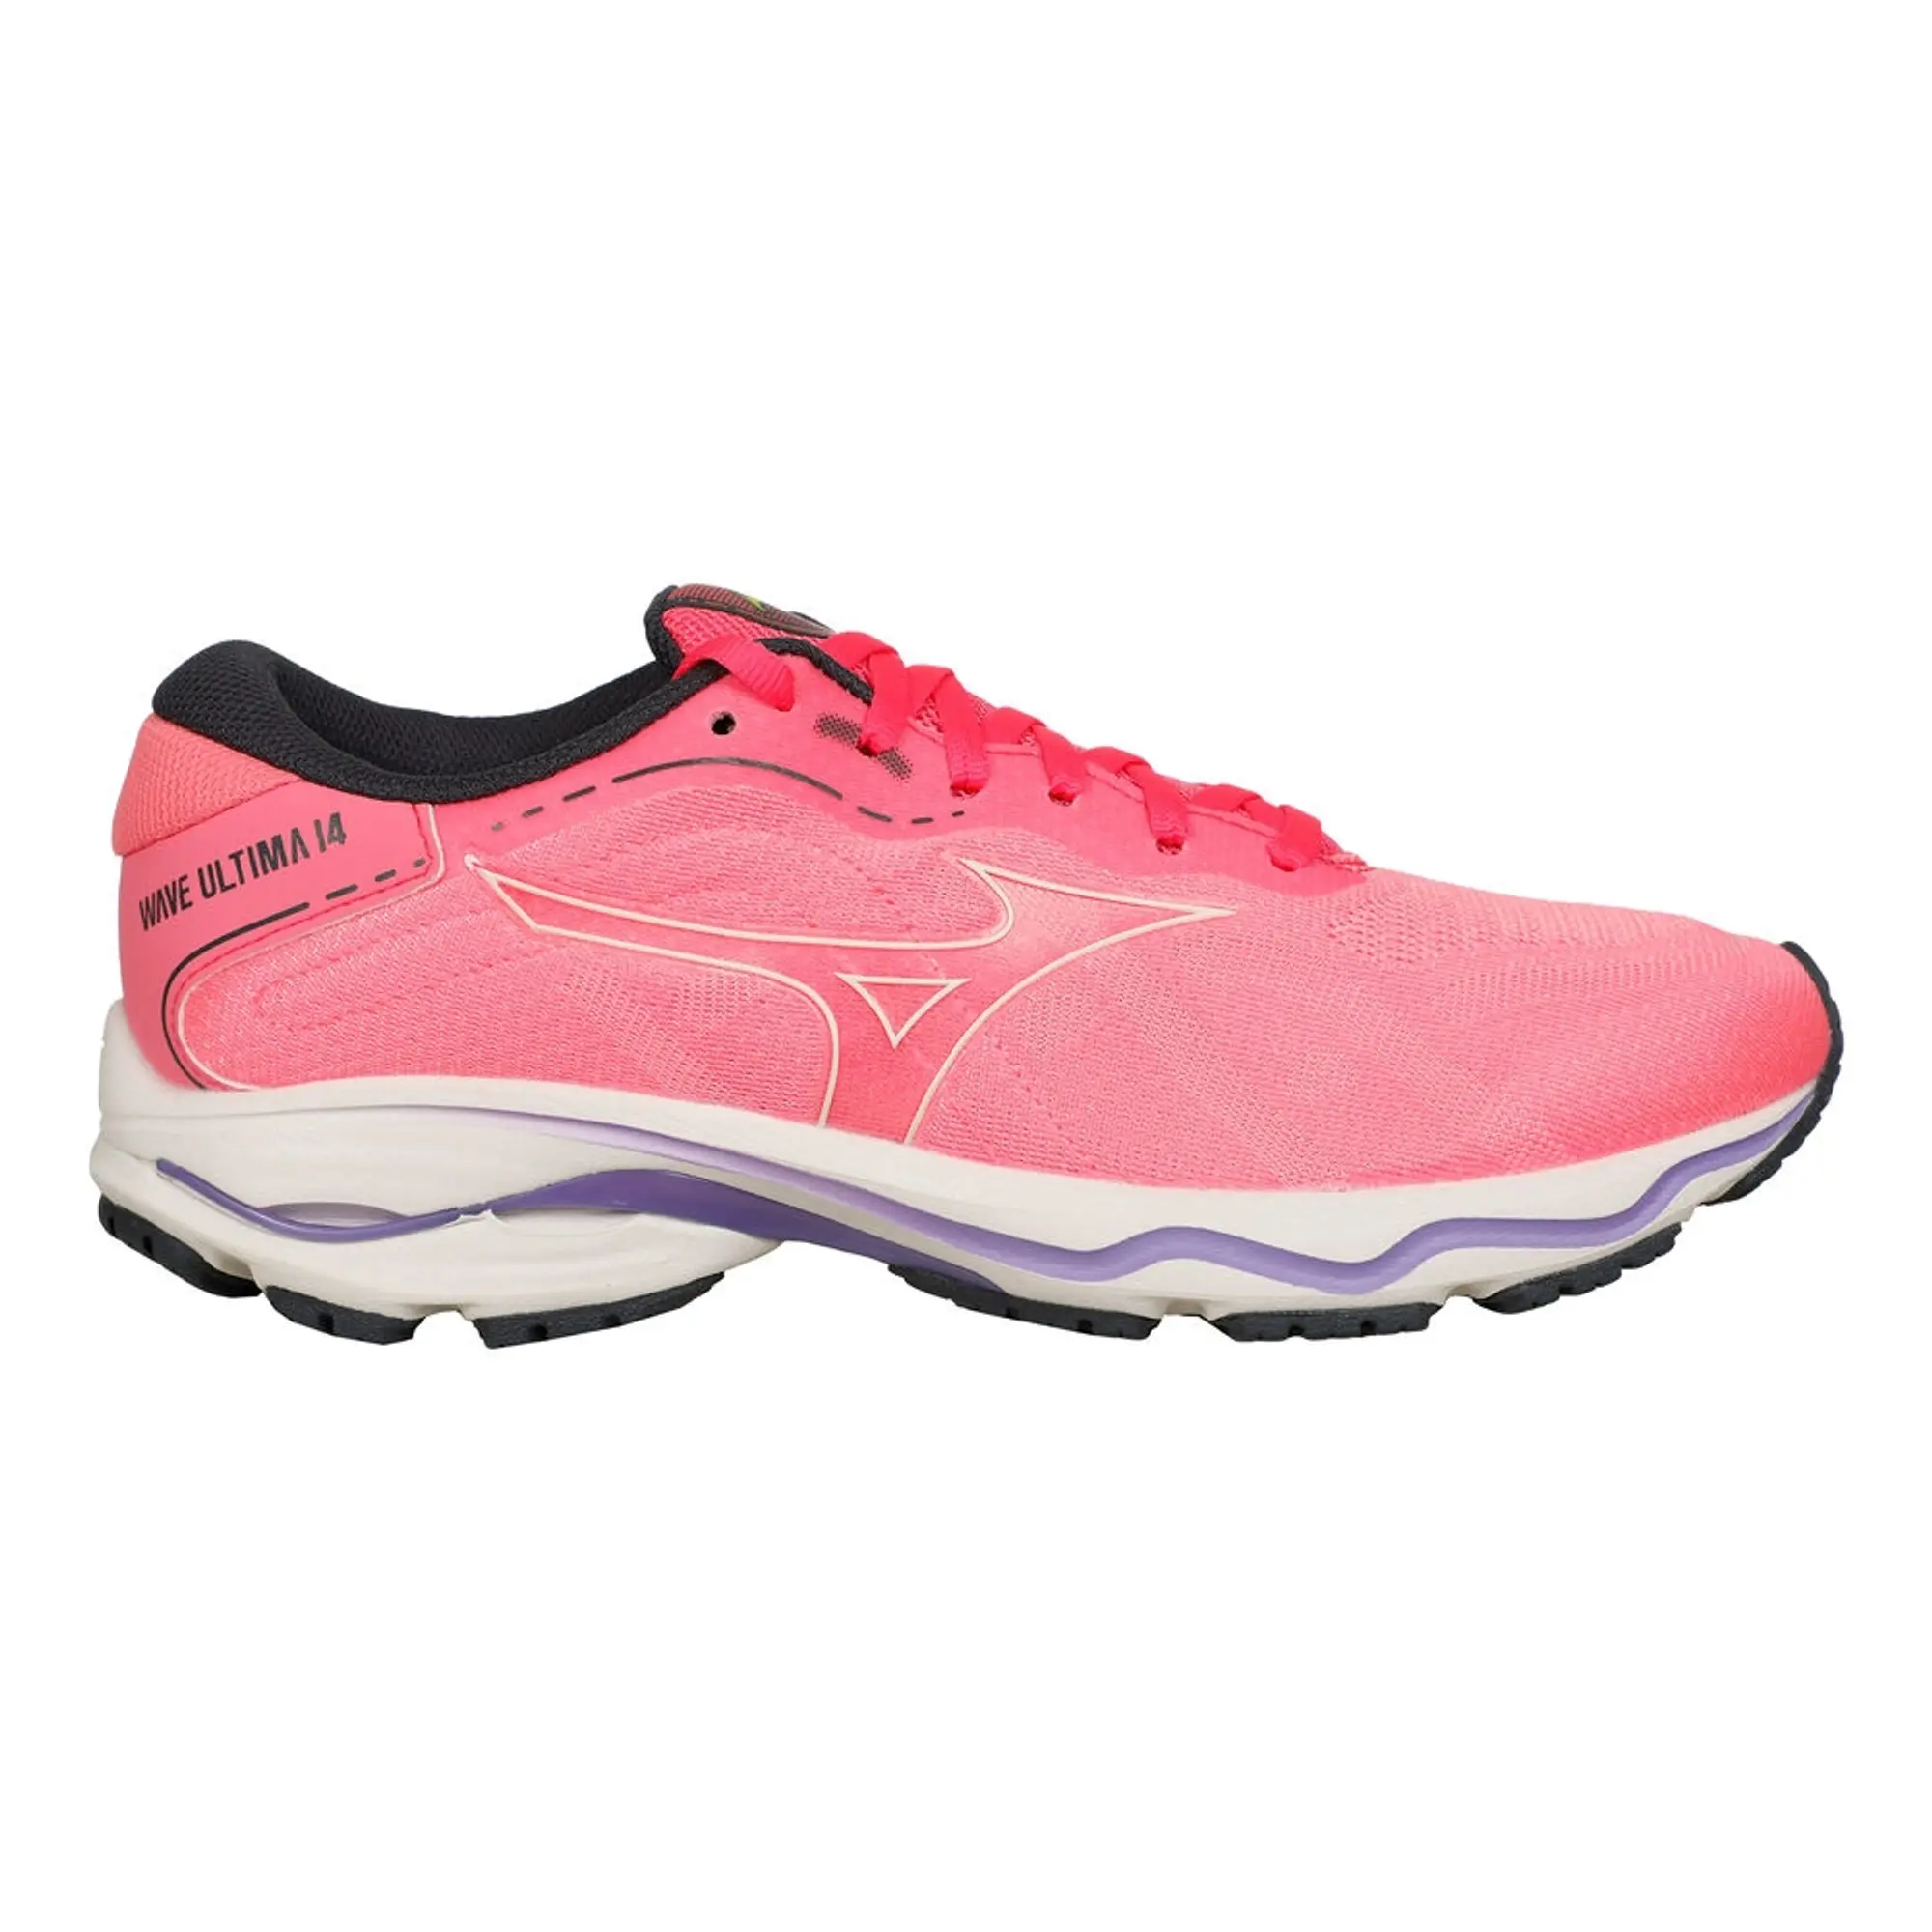 Mizuno Wave Ultima 14 Neutral Running Shoe Women - Pink, Lilac